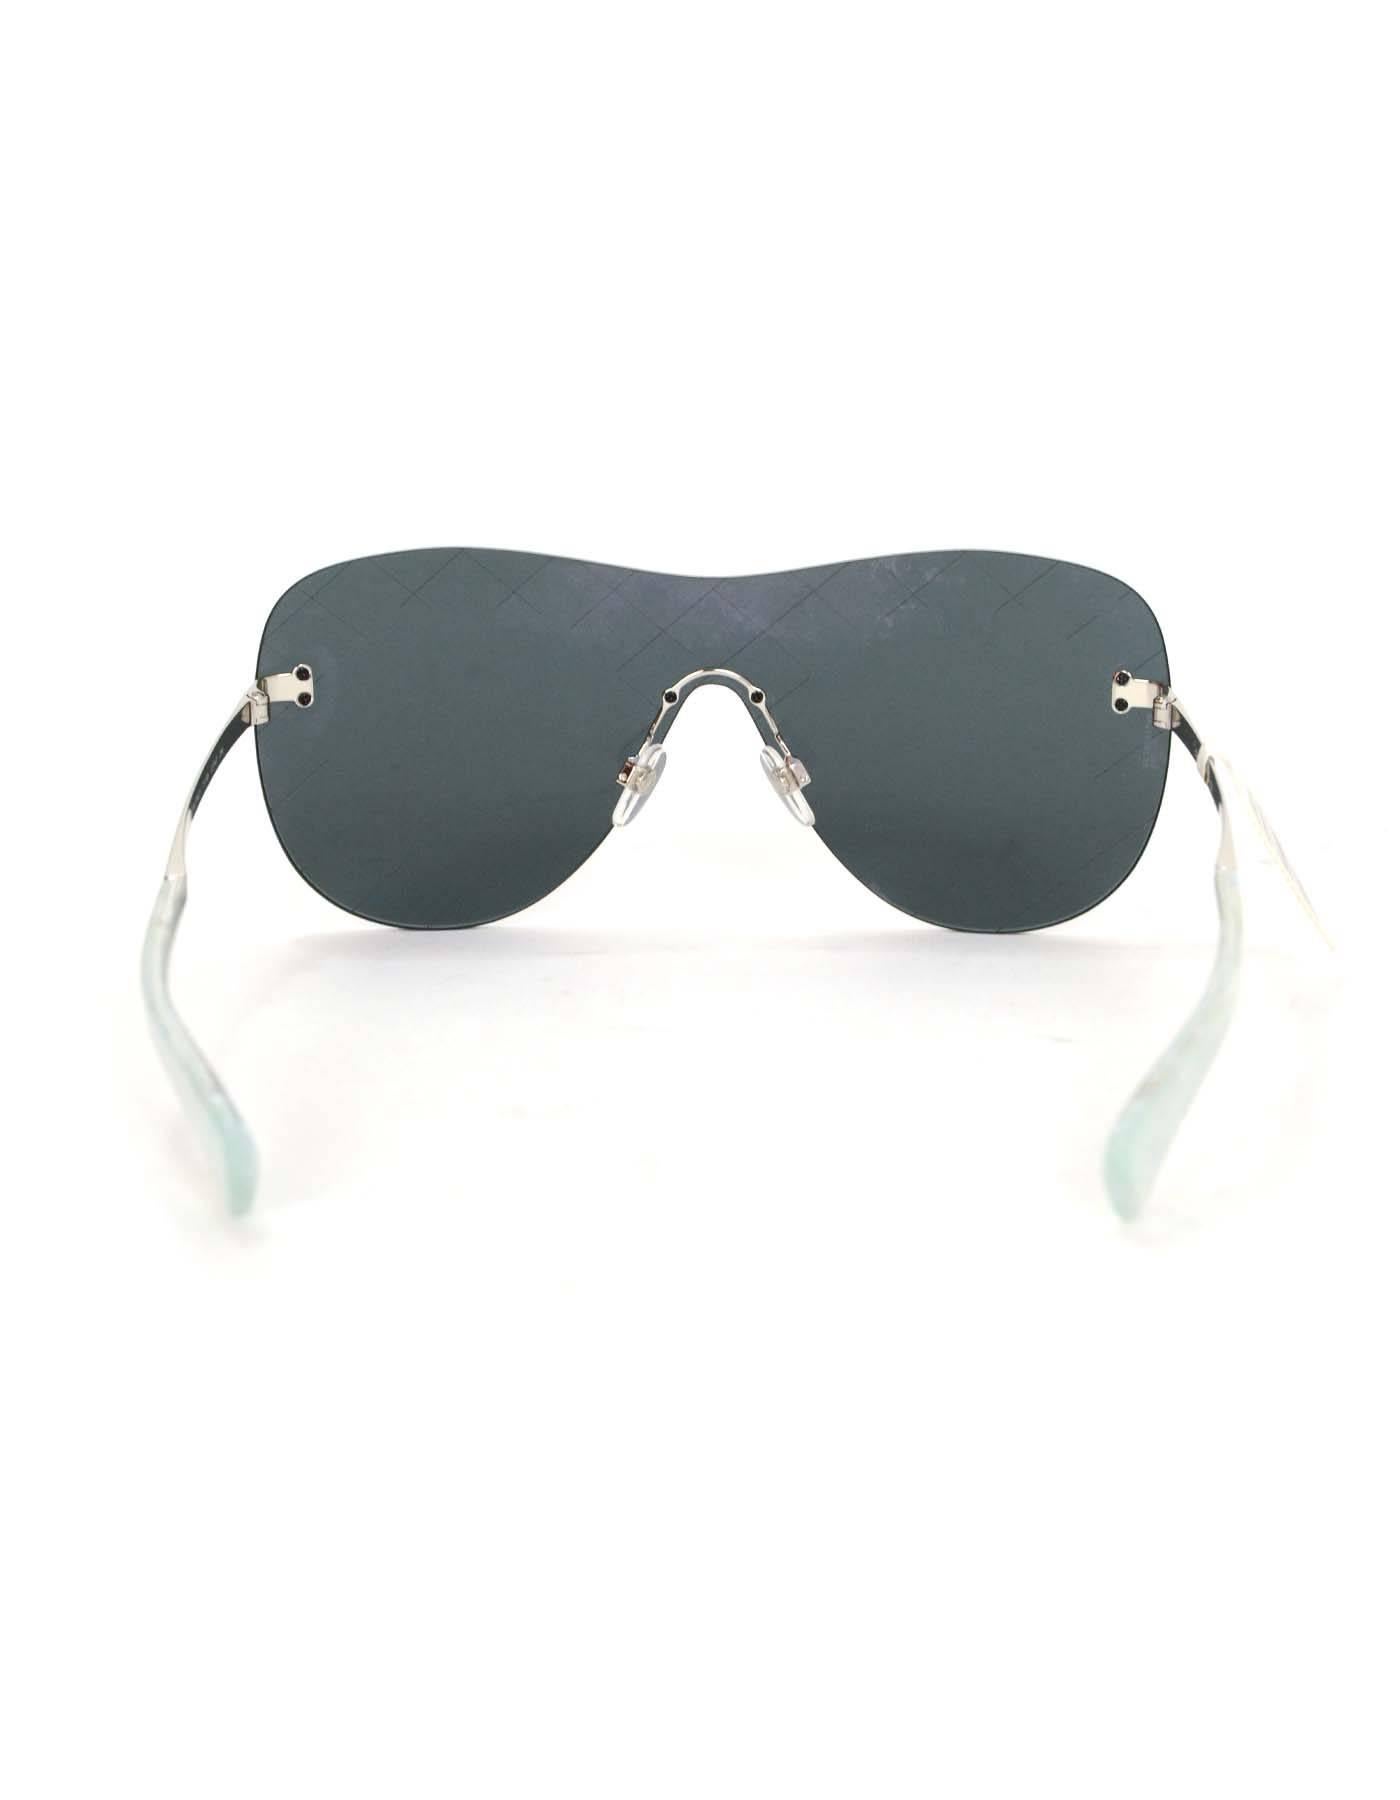 chanel mirrored aviator sunglasses